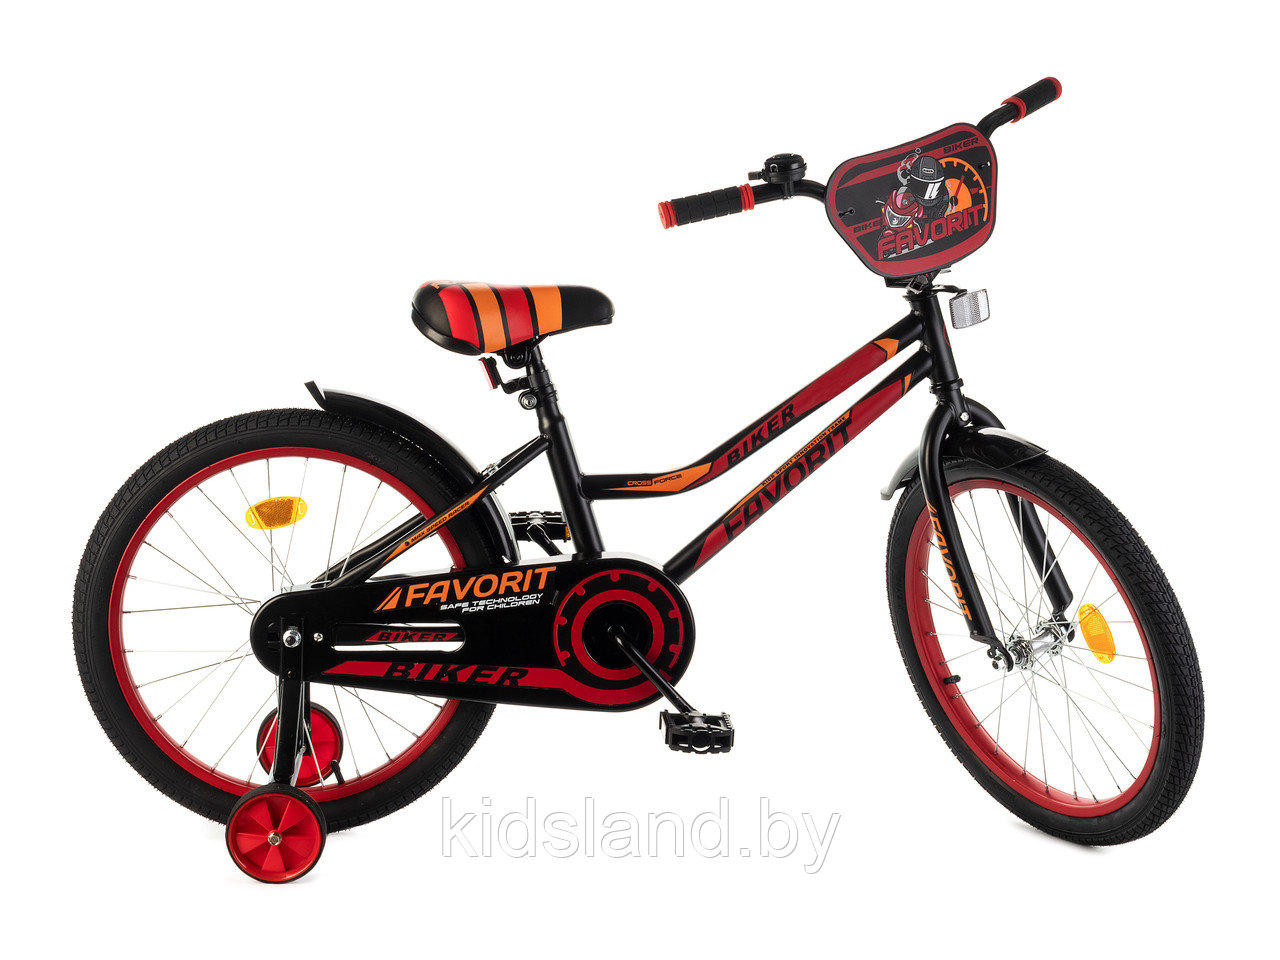 Детский велосипед Favorit Biker-18'' красно-черный